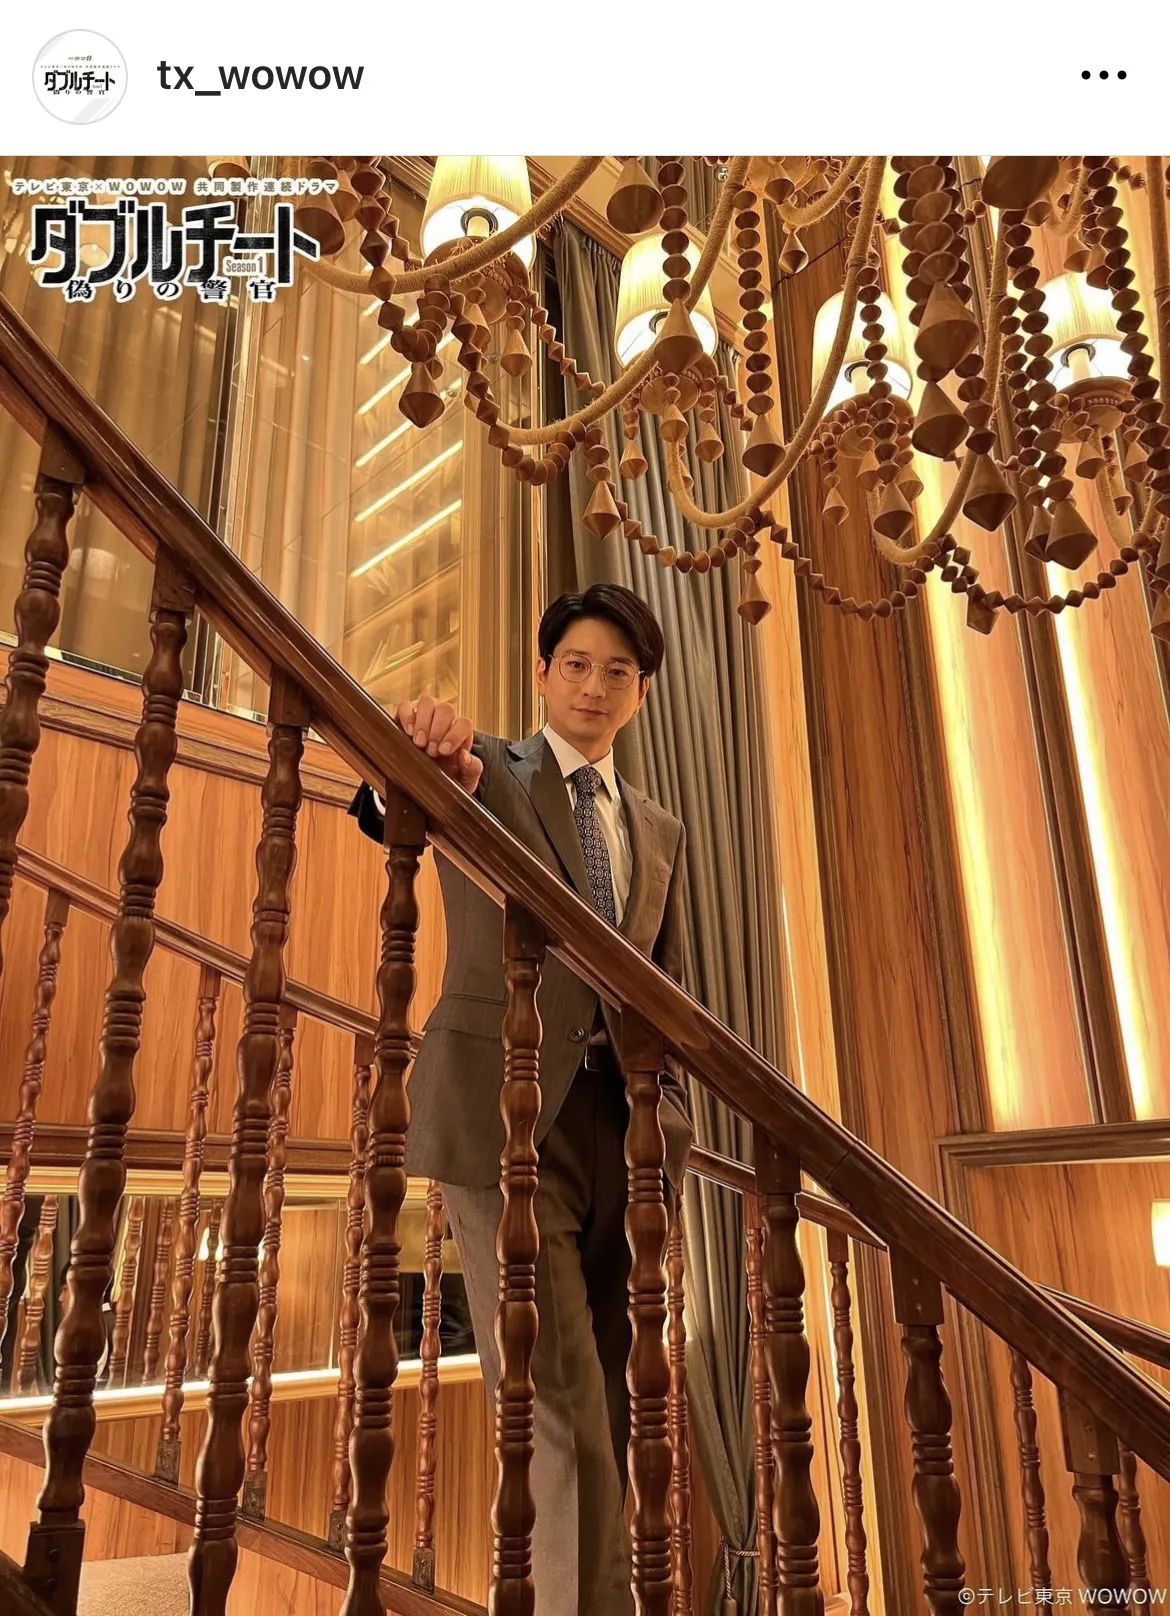 【写真】向井理、 高級クラブの階段で大人な雰囲気漂うショット